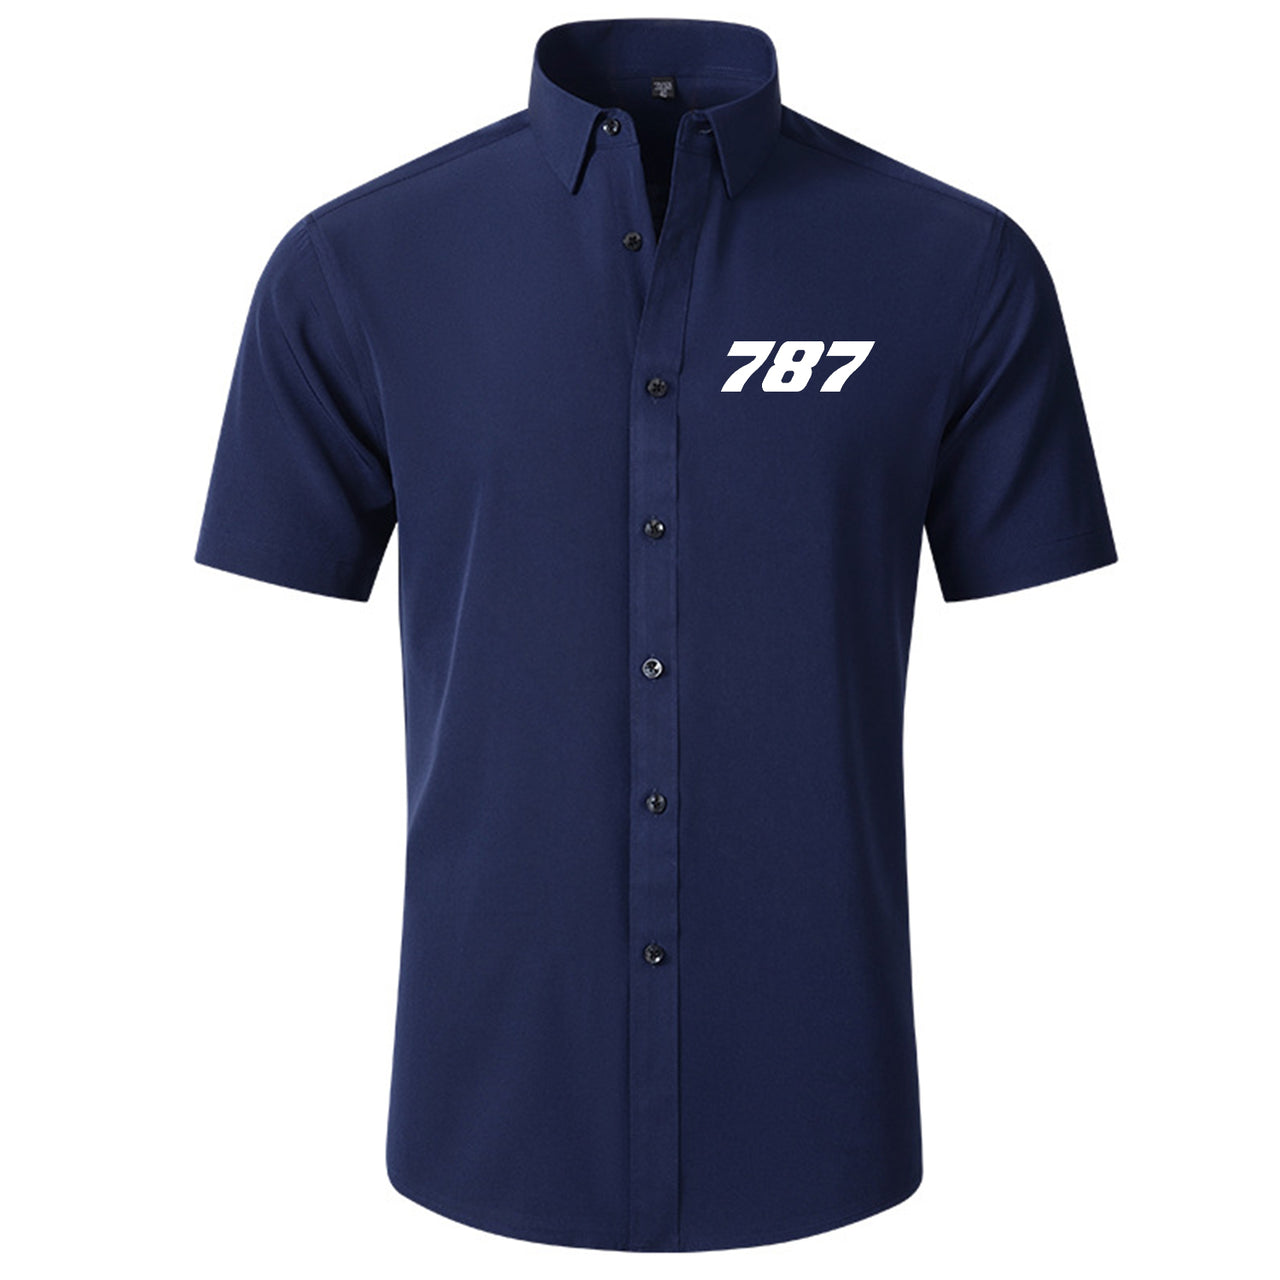 787 Flat Text Designed Short Sleeve Shirts